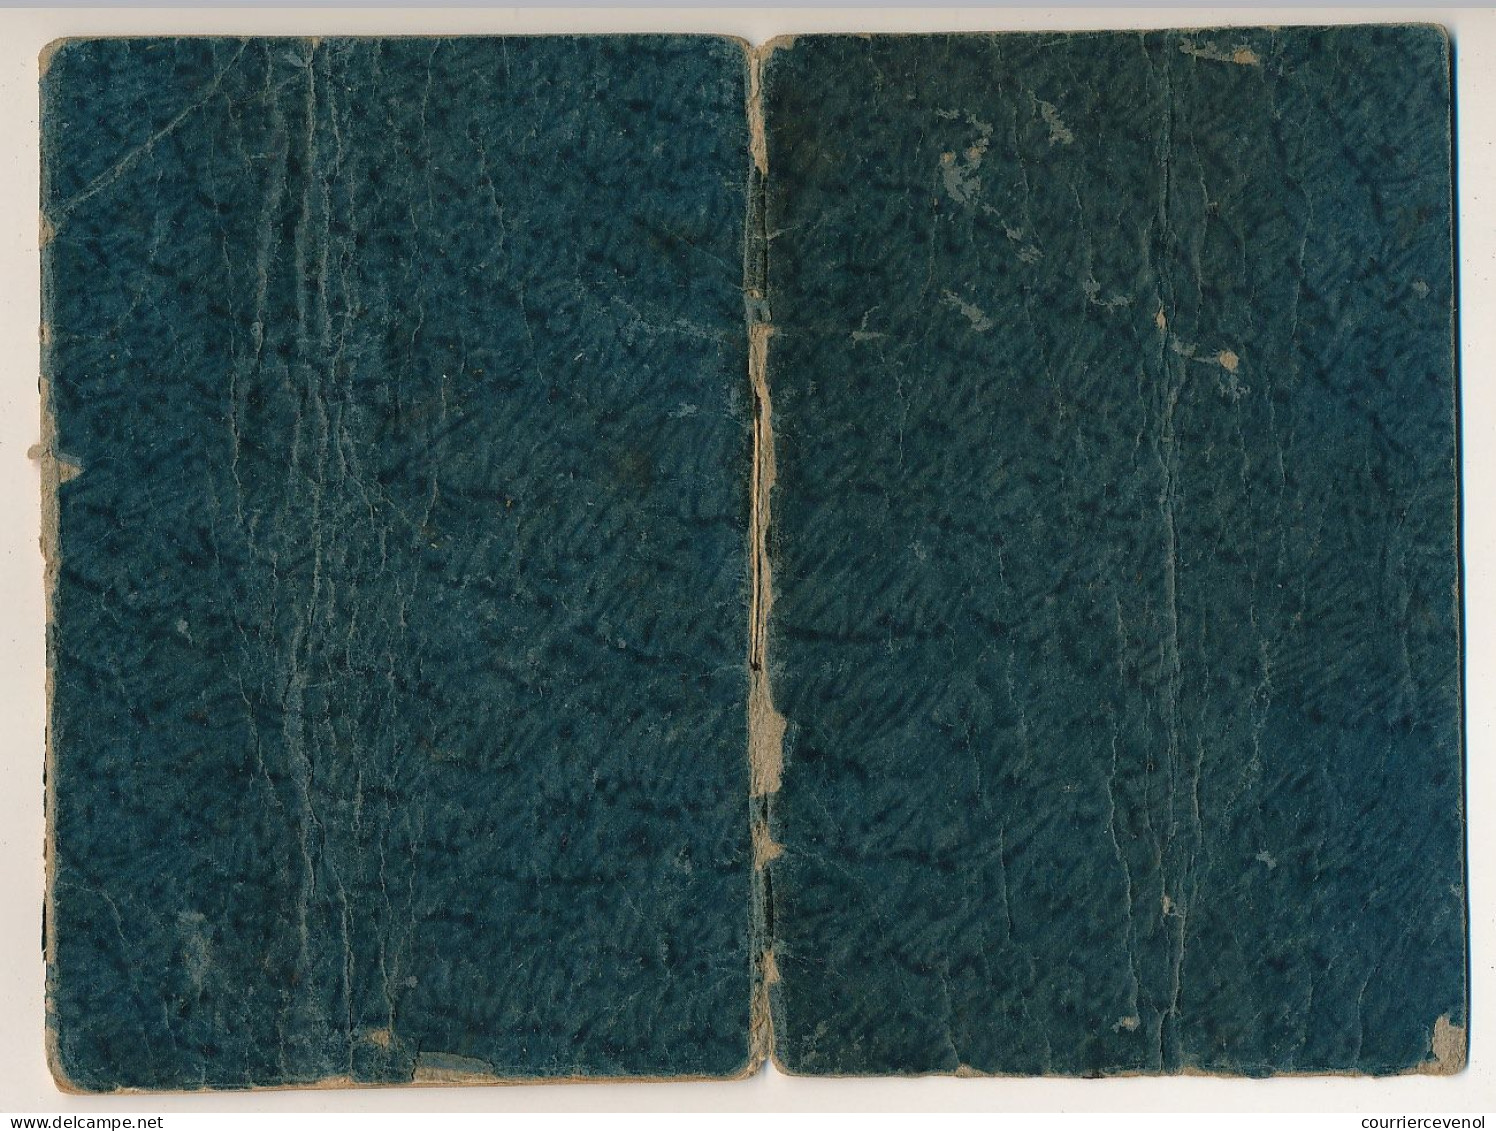 FRANCE - Livret d'Ouvrier - Préfecture du Gard, Louis NOGUES, Serrurier - cachets divers dont Forges Fonderies Gard 1864